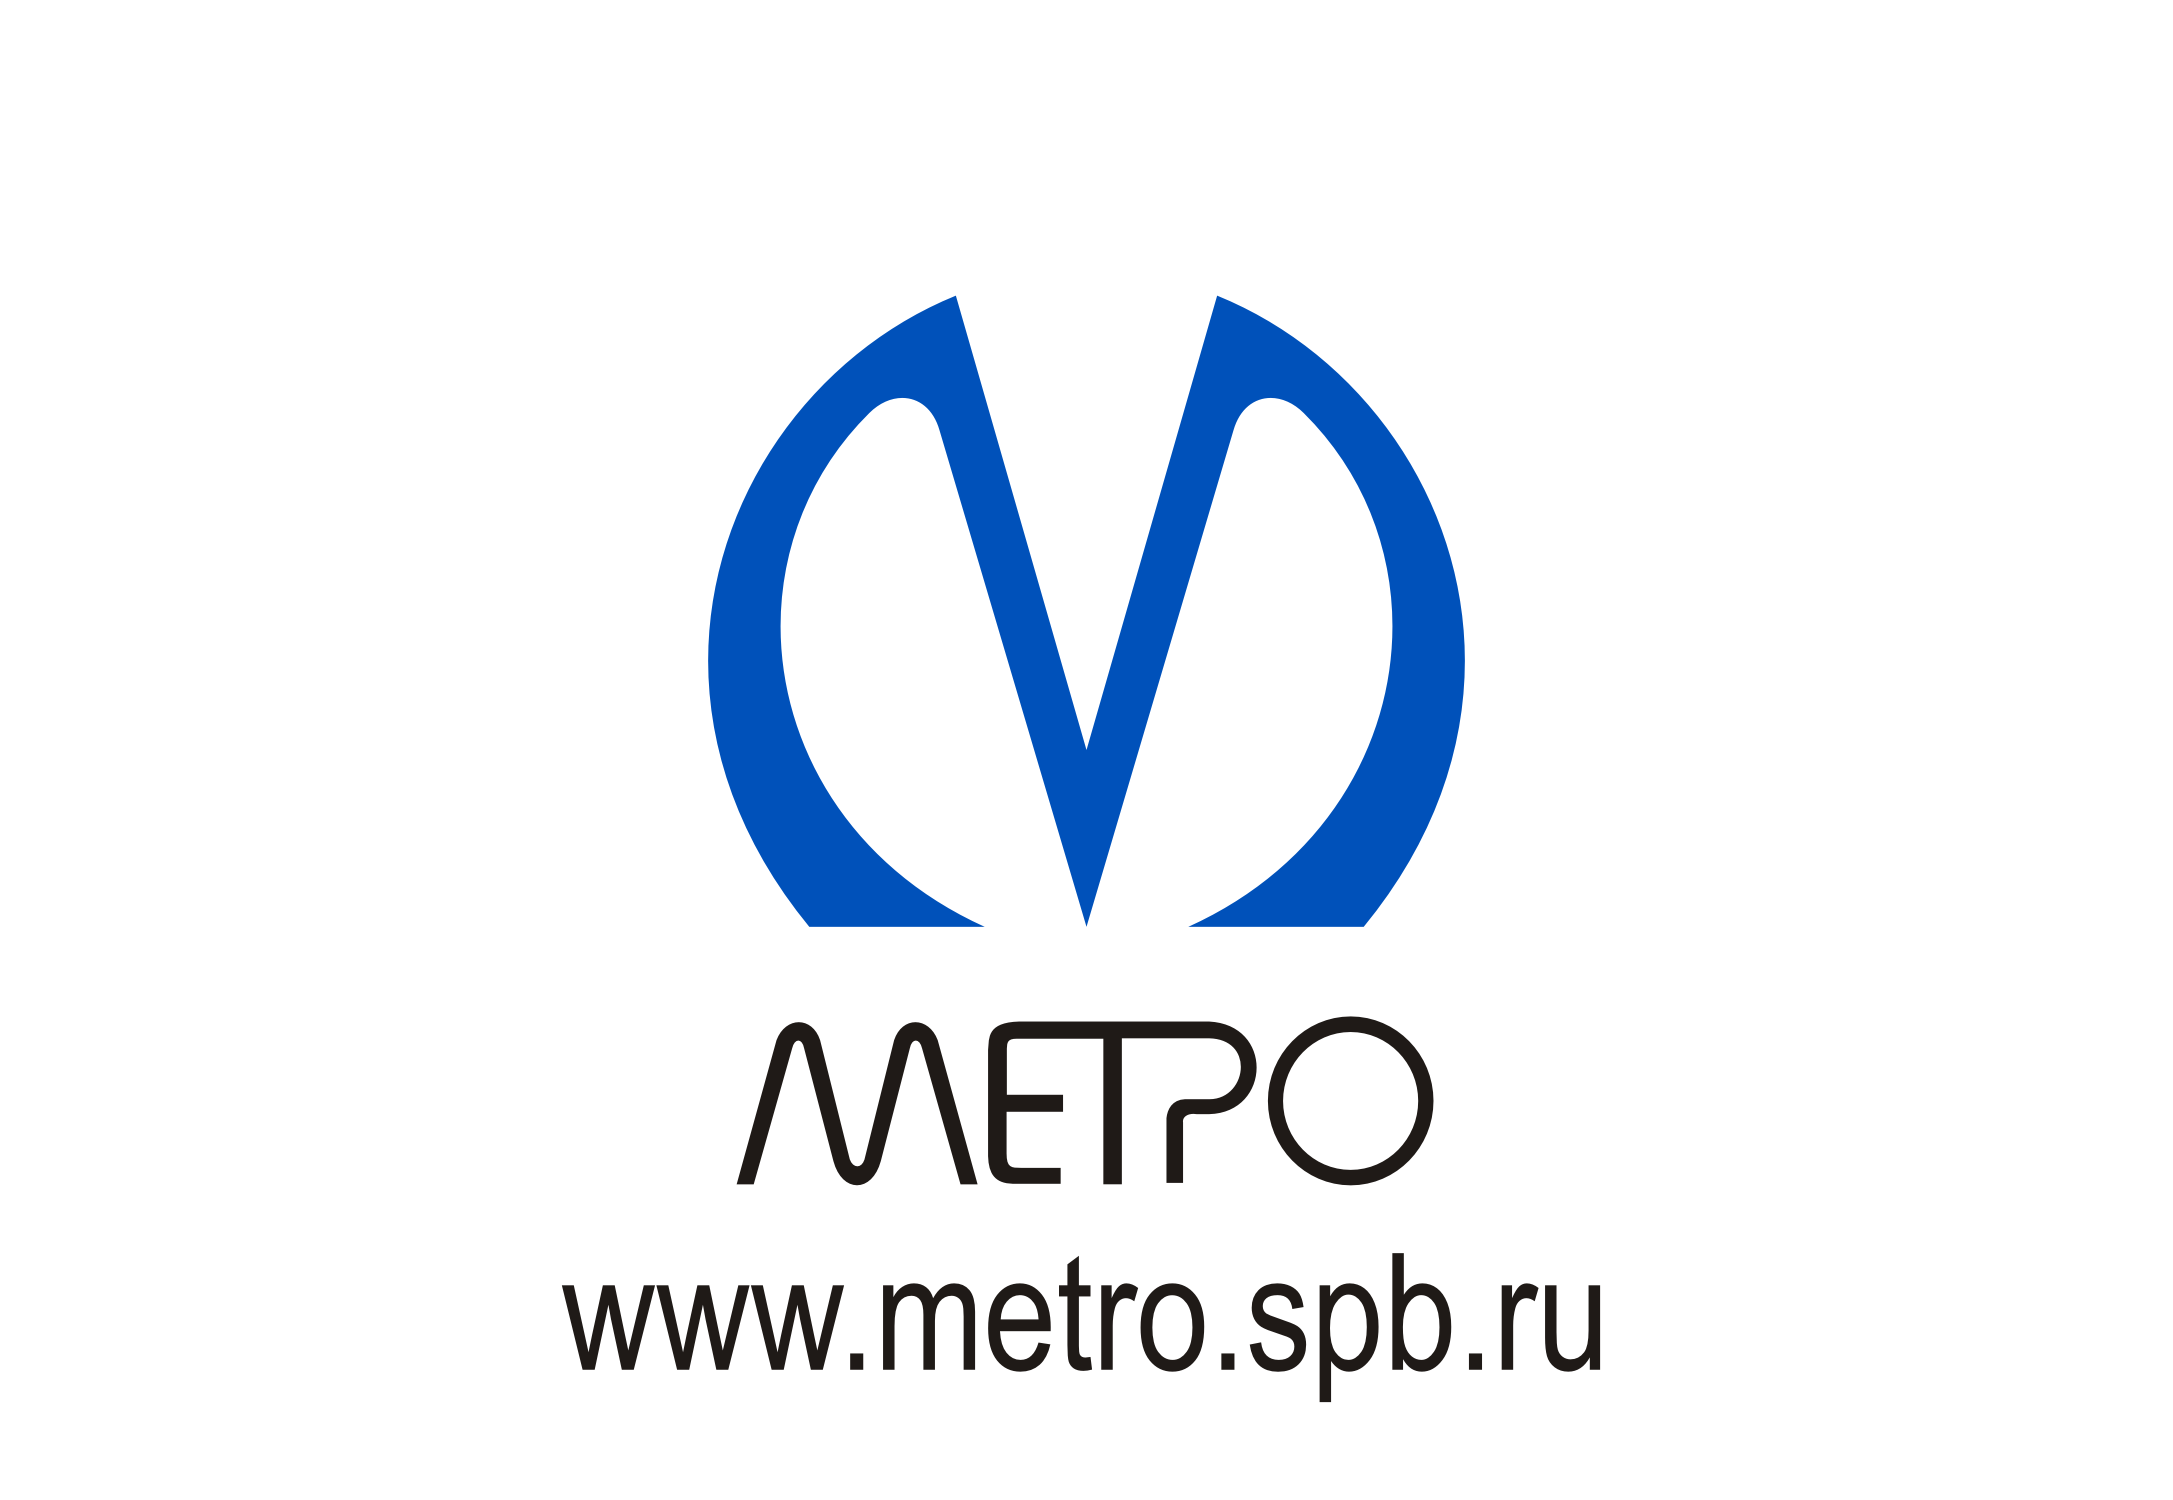 Петербургский Метрополитен, государственное унитарное предприятие